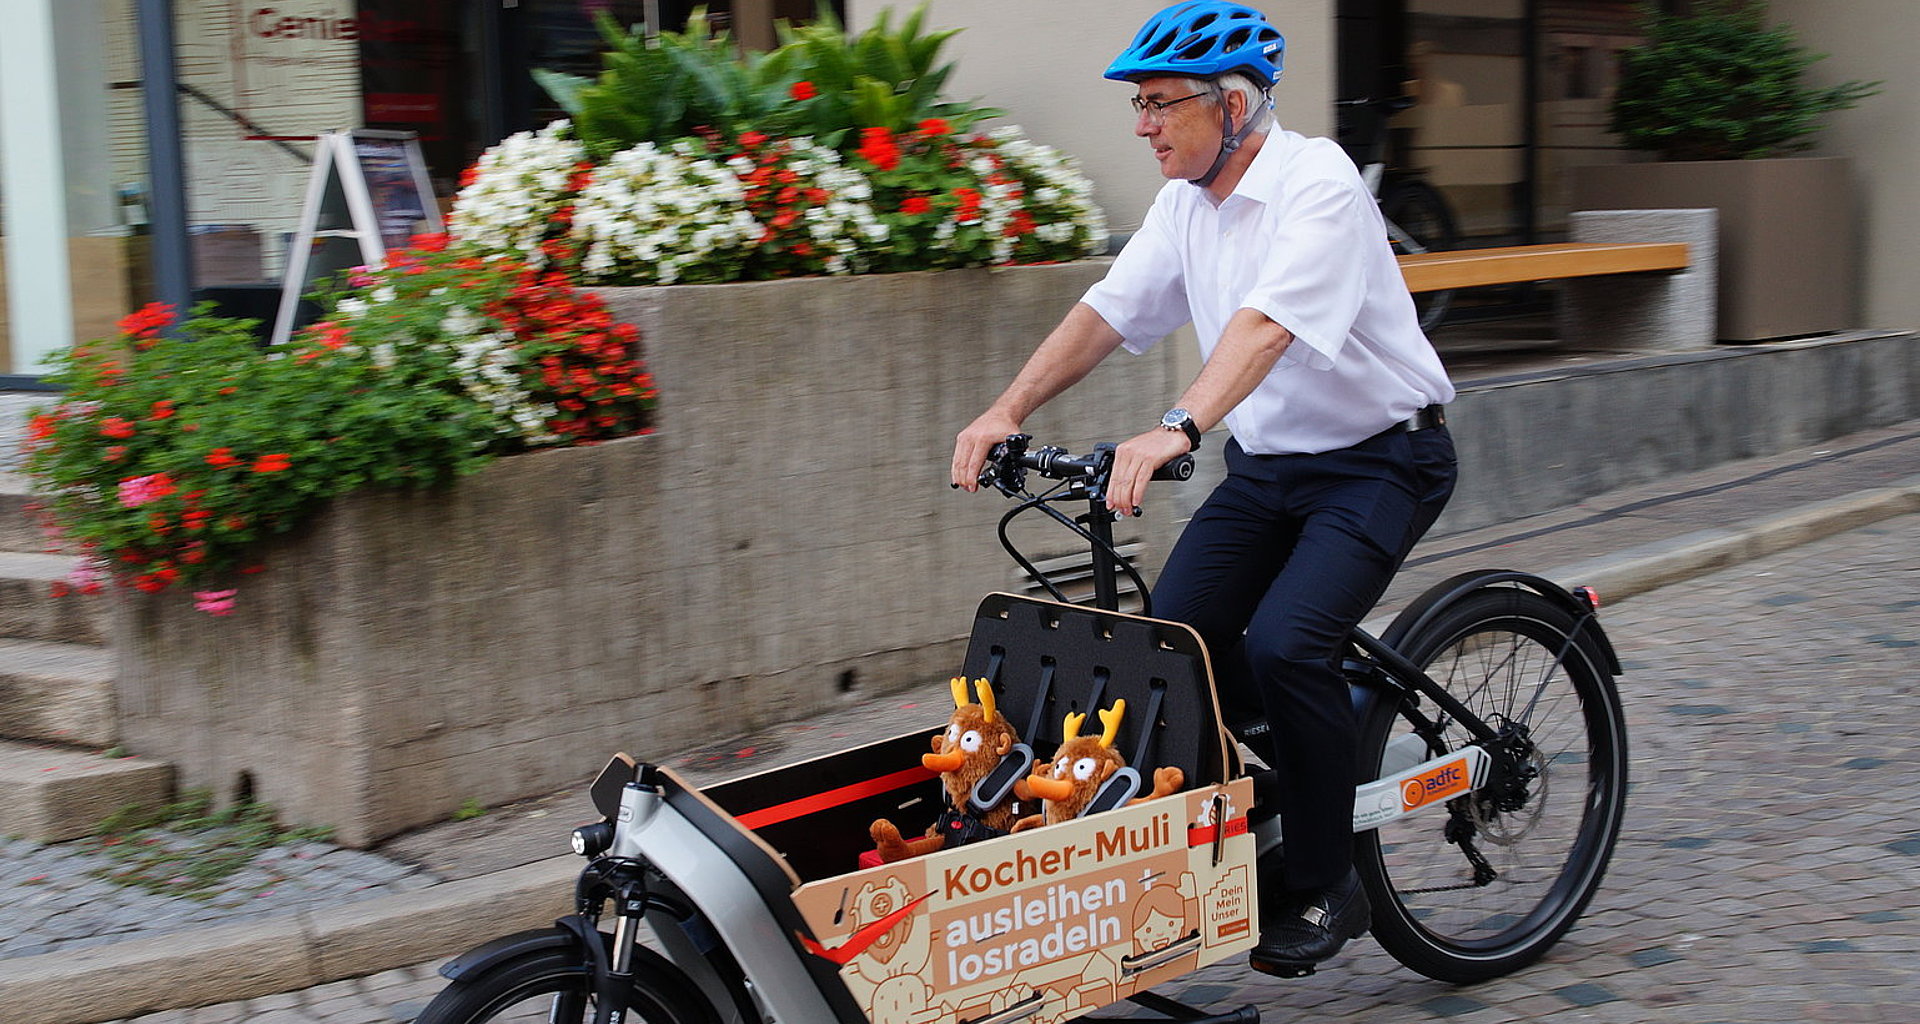 Oberbürgermeister Hermann-Josef Pelgrim fährt ein Elektrolastenrad mit der aufschrift "Kocher Muli, ausleihen und radeln"